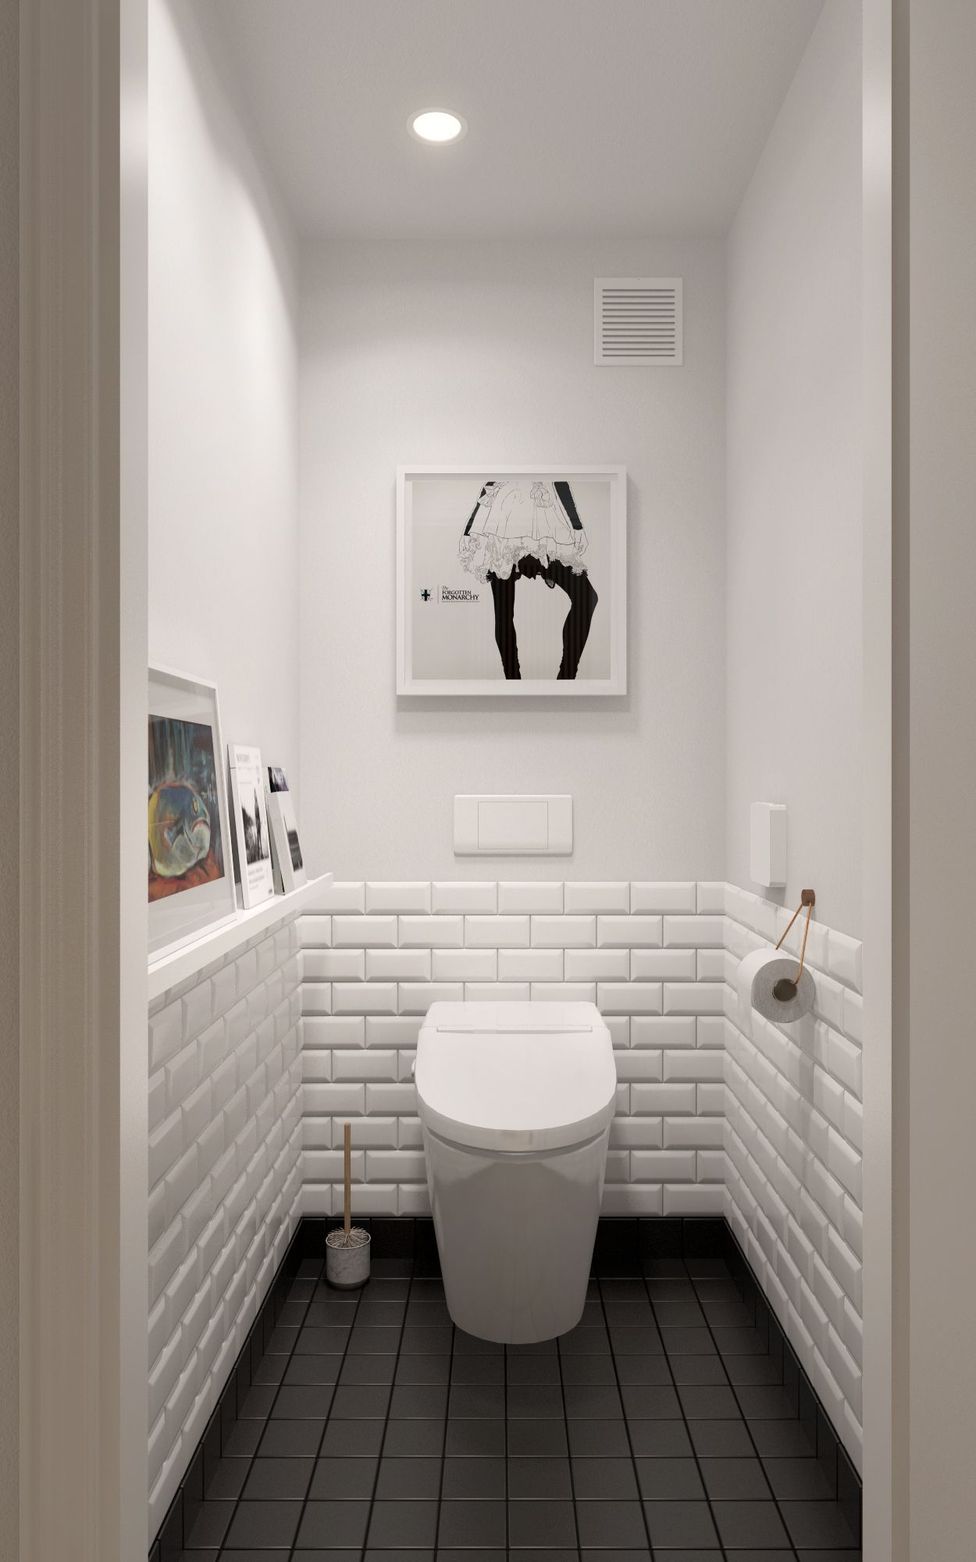 Как визуально увеличить ванную комнату